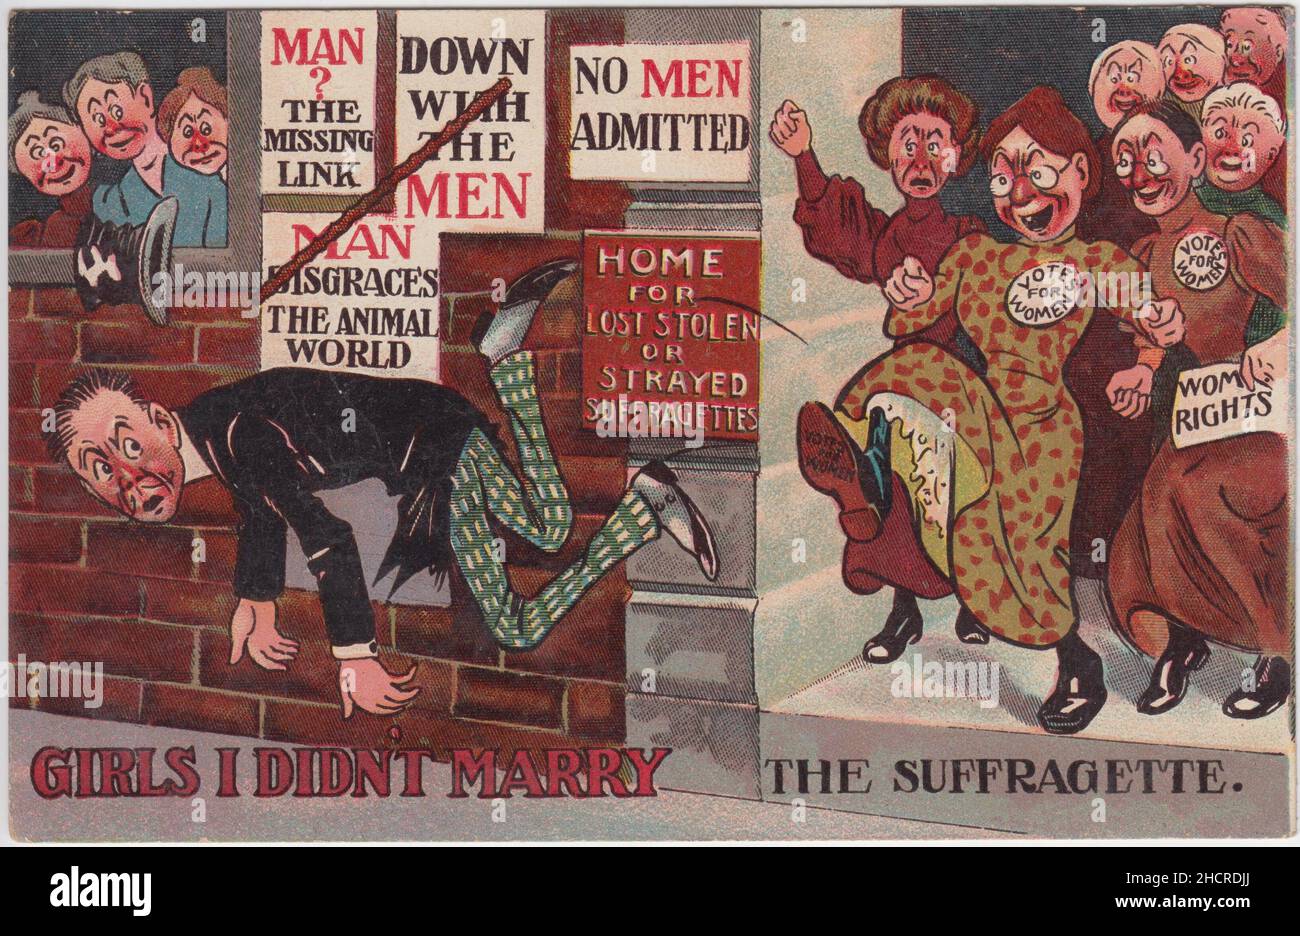 „Girls I didn't Marry the Suffragette“: Zeichentrickfilm, in dem ein Mann mit Spaten und einem ziemlich dünnen Schnurrbart aus einem „Home for Lost Stolen or Strayed Suffragetes“ herausgebootet wird. Die Frauen werden als hässliche, ältere Frauen dargestellt. Mehrere haben Abzeichen mit „Votes for Women“ auf (eine Beschriftung, die auch auf der Sohle des Stiefels steht, die mit dem hinteren Ende des Mannes verbunden ist) und eine Frau trägt ein Papier mit der Überschrift „Frauenrechte“. Anti-Männer-Plakate sind mit den Slogans „Down with the Men“, „No Men Invided“, „man disgrazed the animal world“ und „man? Die fehlende Verknüpfung“ Stockfoto